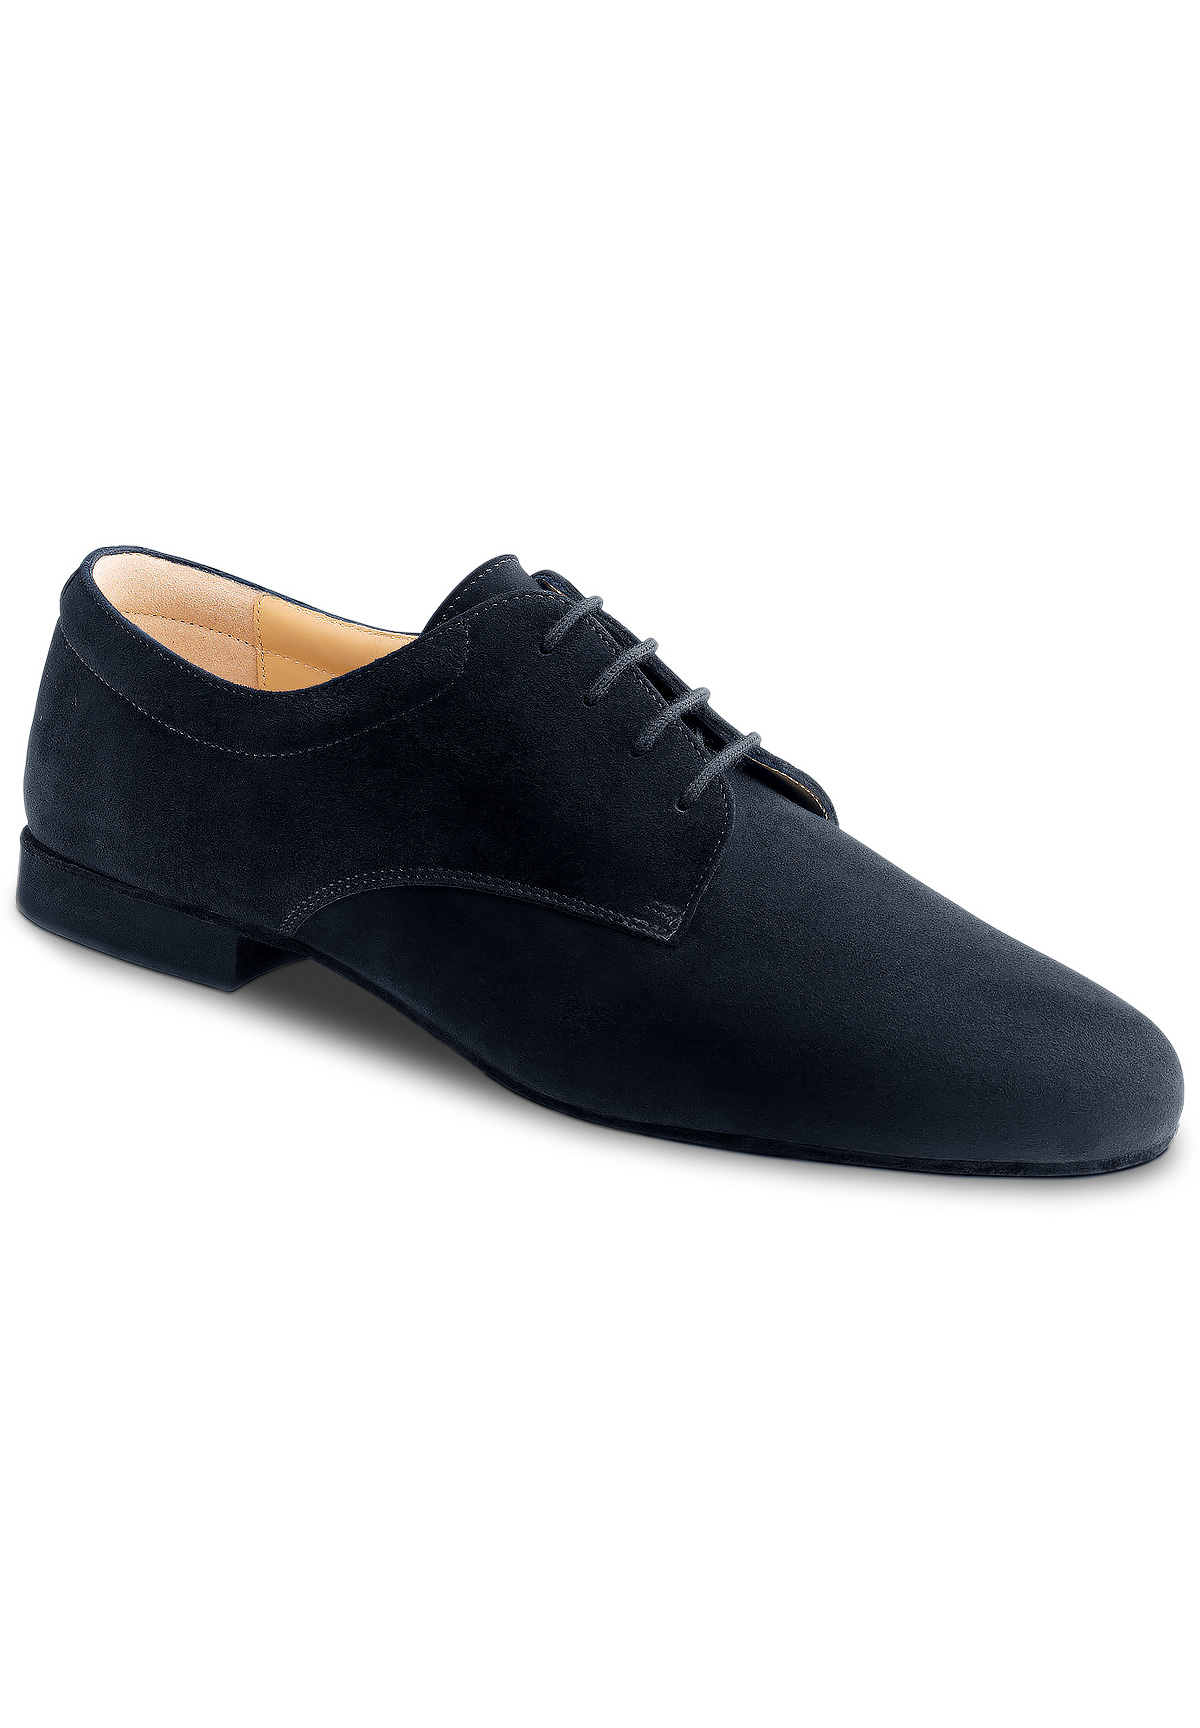 Werner Kern 28058 Mens Dance Shoes | Dance Shoes